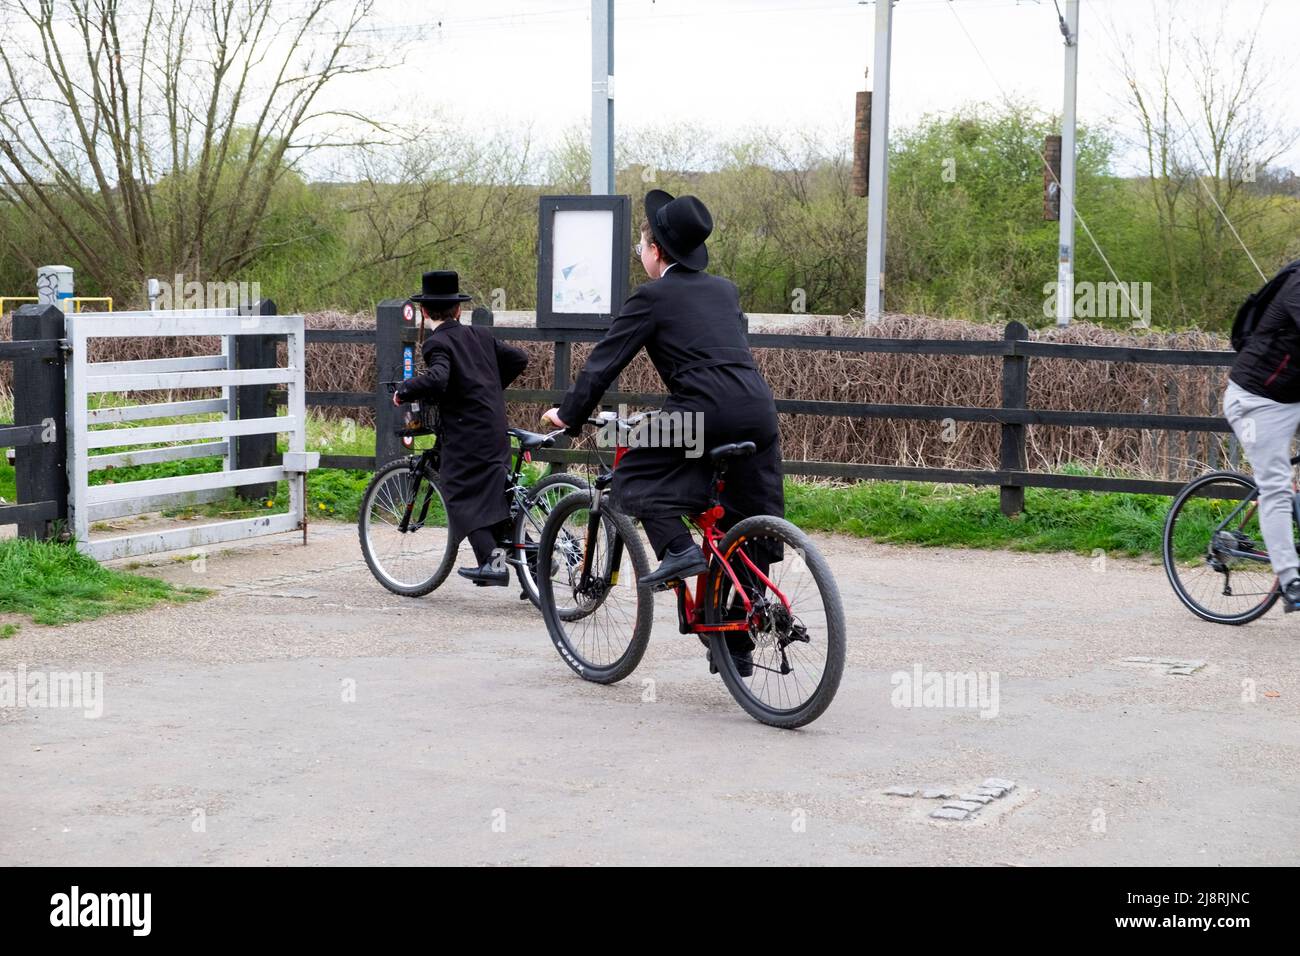 Des garçons juifs orthodoxes en vélo sur une piste cyclable traversant la porte de la réserve naturelle Walthamstow Wetlands à Londres, Angleterre KATHY DEWITT Banque D'Images